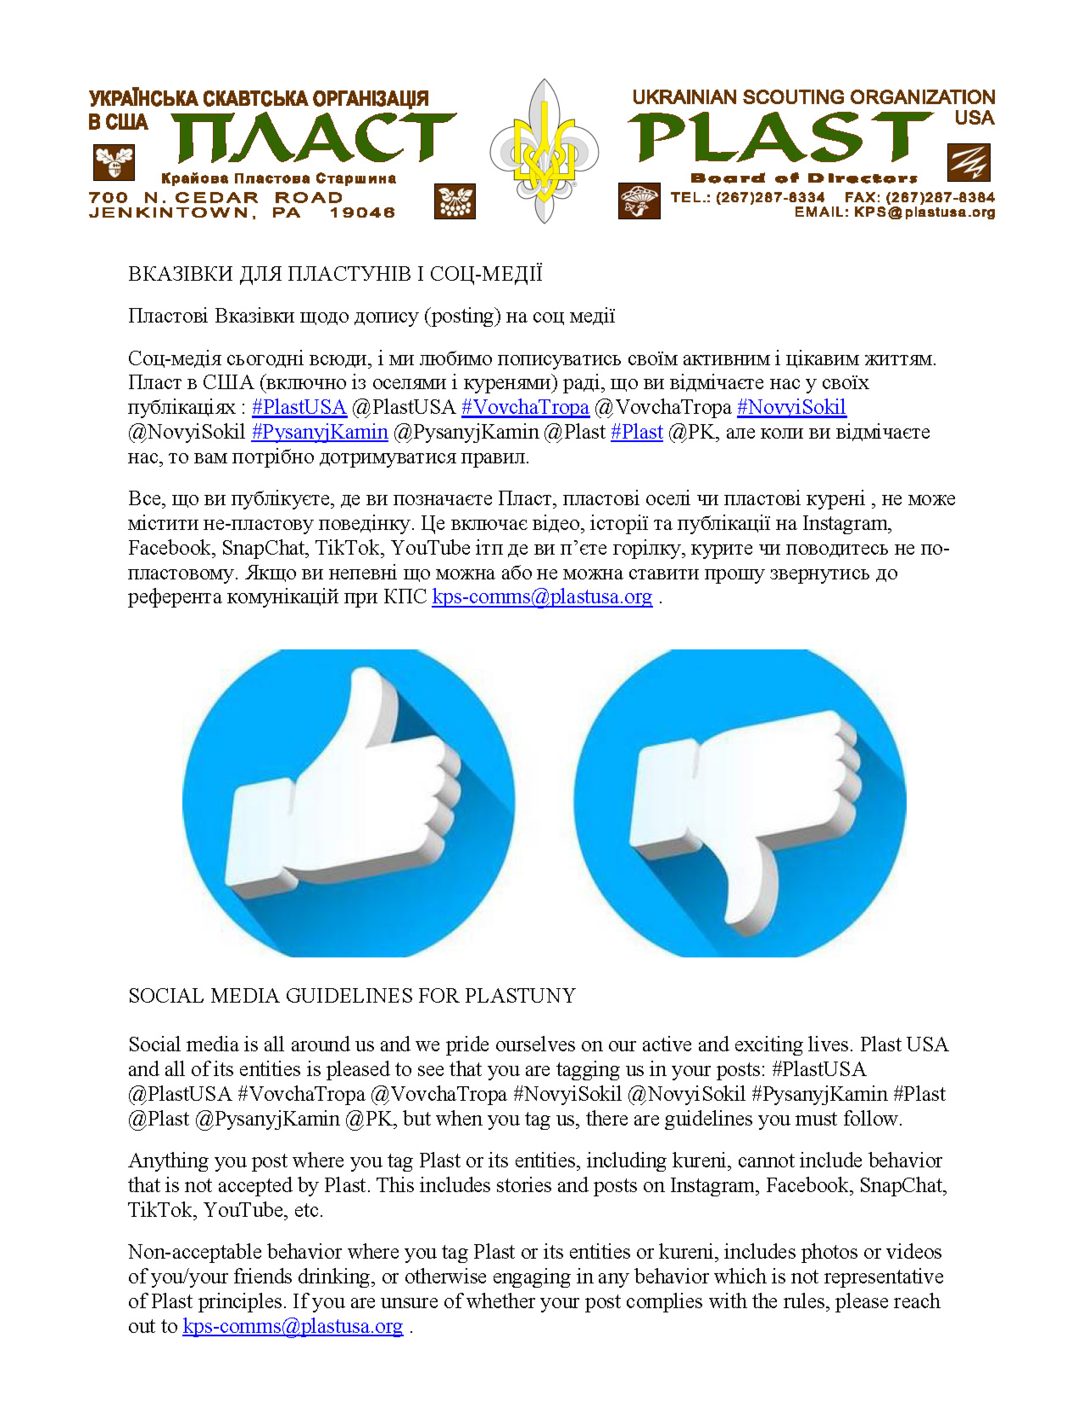 Social Media Guidelines / Пластові Вказівки Щодо Дописів на Соц Медії